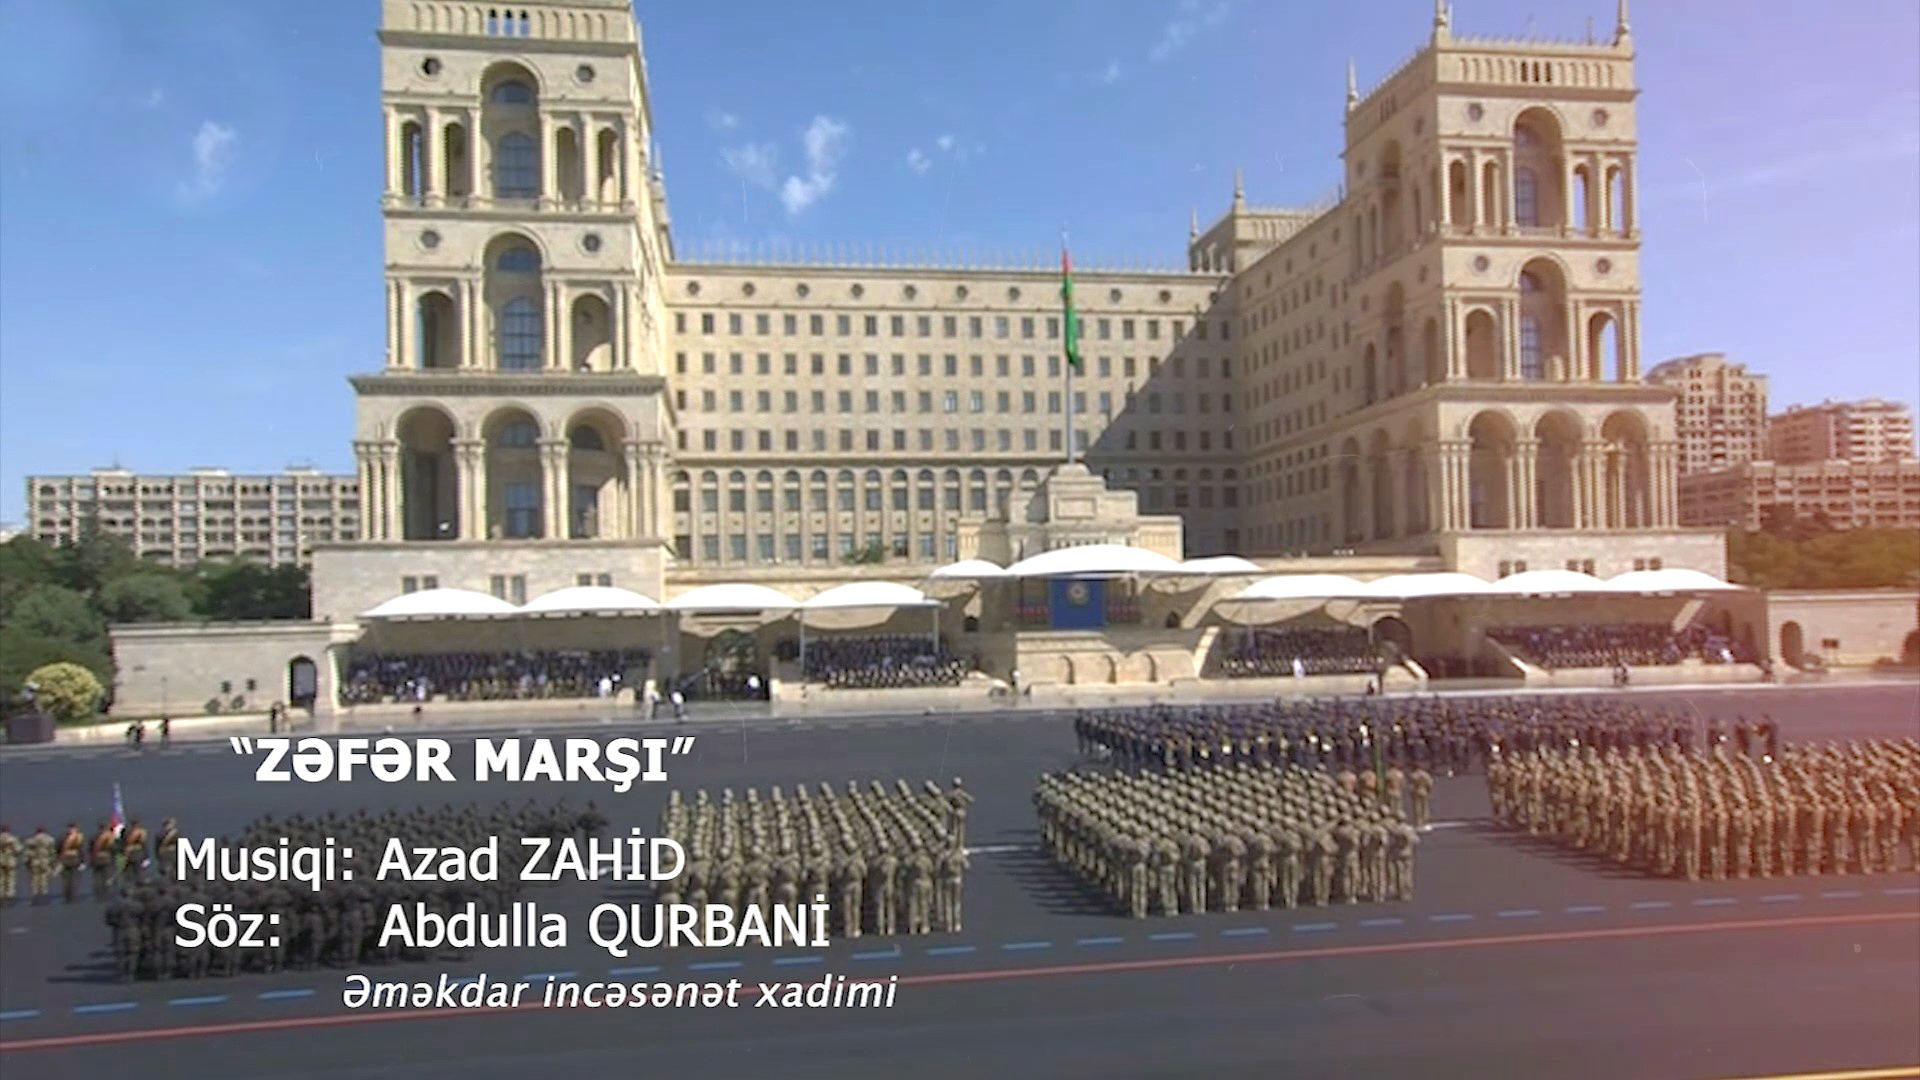 Müdafiə Nazirliyi “Zəfər marşı” adlı yeni videoçarx hazırlayıb - VİDEO